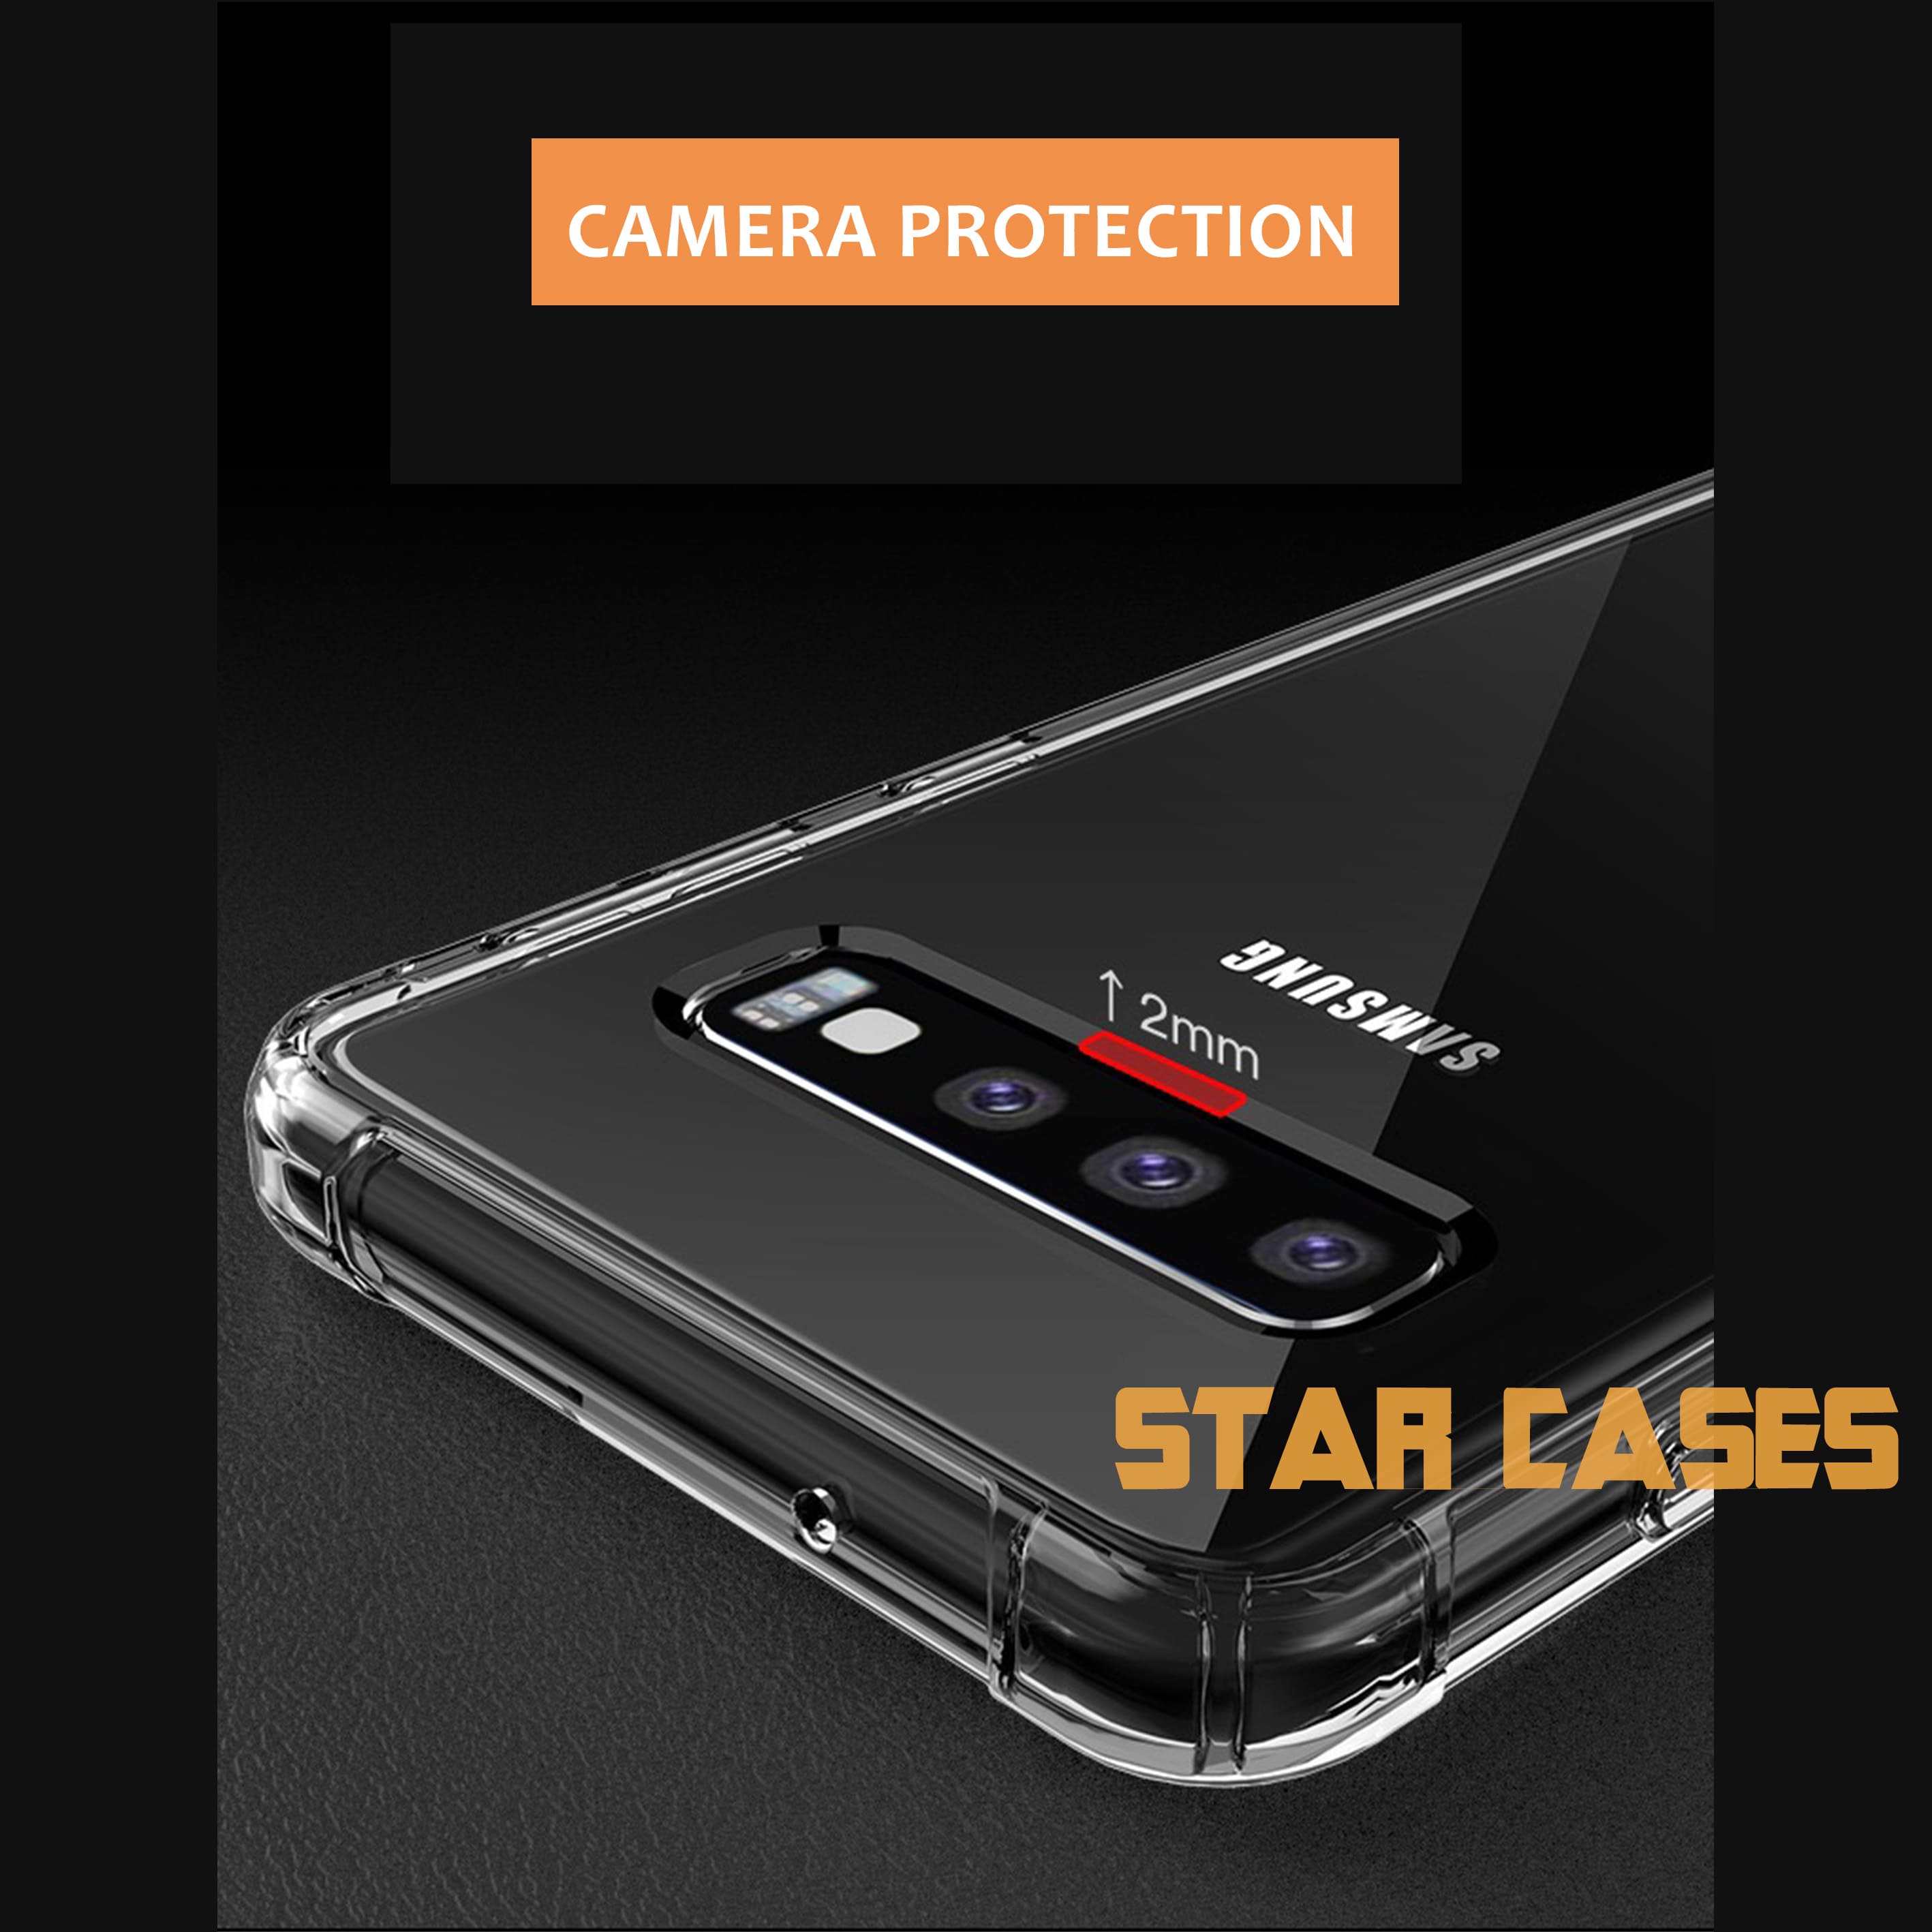 Samsung S10 Clear Soft Bumper Case